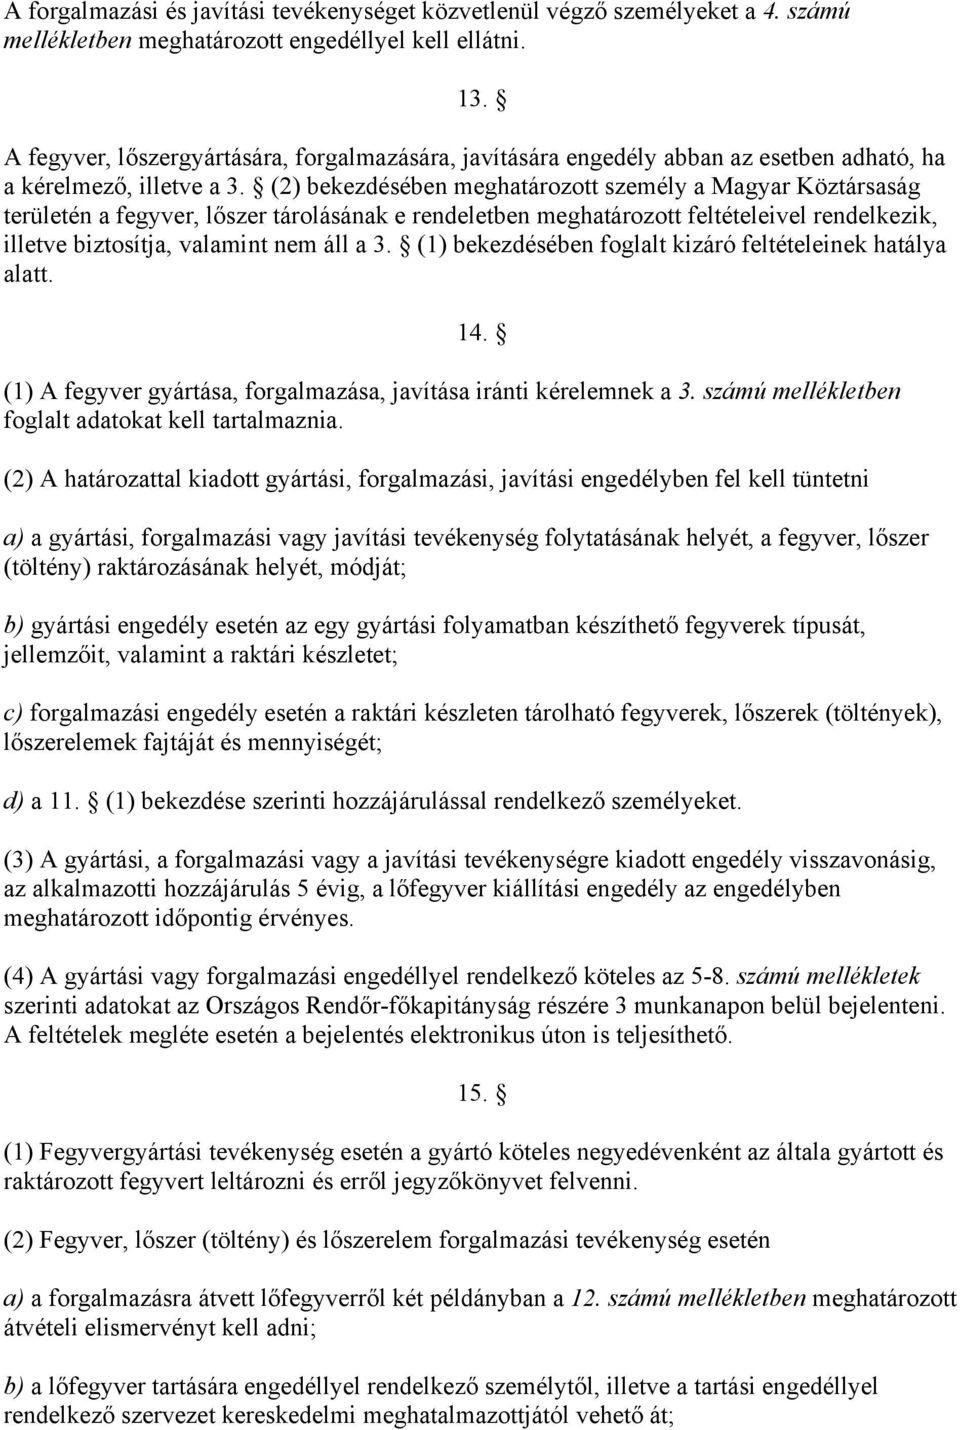 (2) bekezdésében meghatározott személy a Magyar Köztársaság területén a fegyver, lőszer tárolásának e rendeletben meghatározott feltételeivel rendelkezik, illetve biztosítja, valamint nem áll a 3.